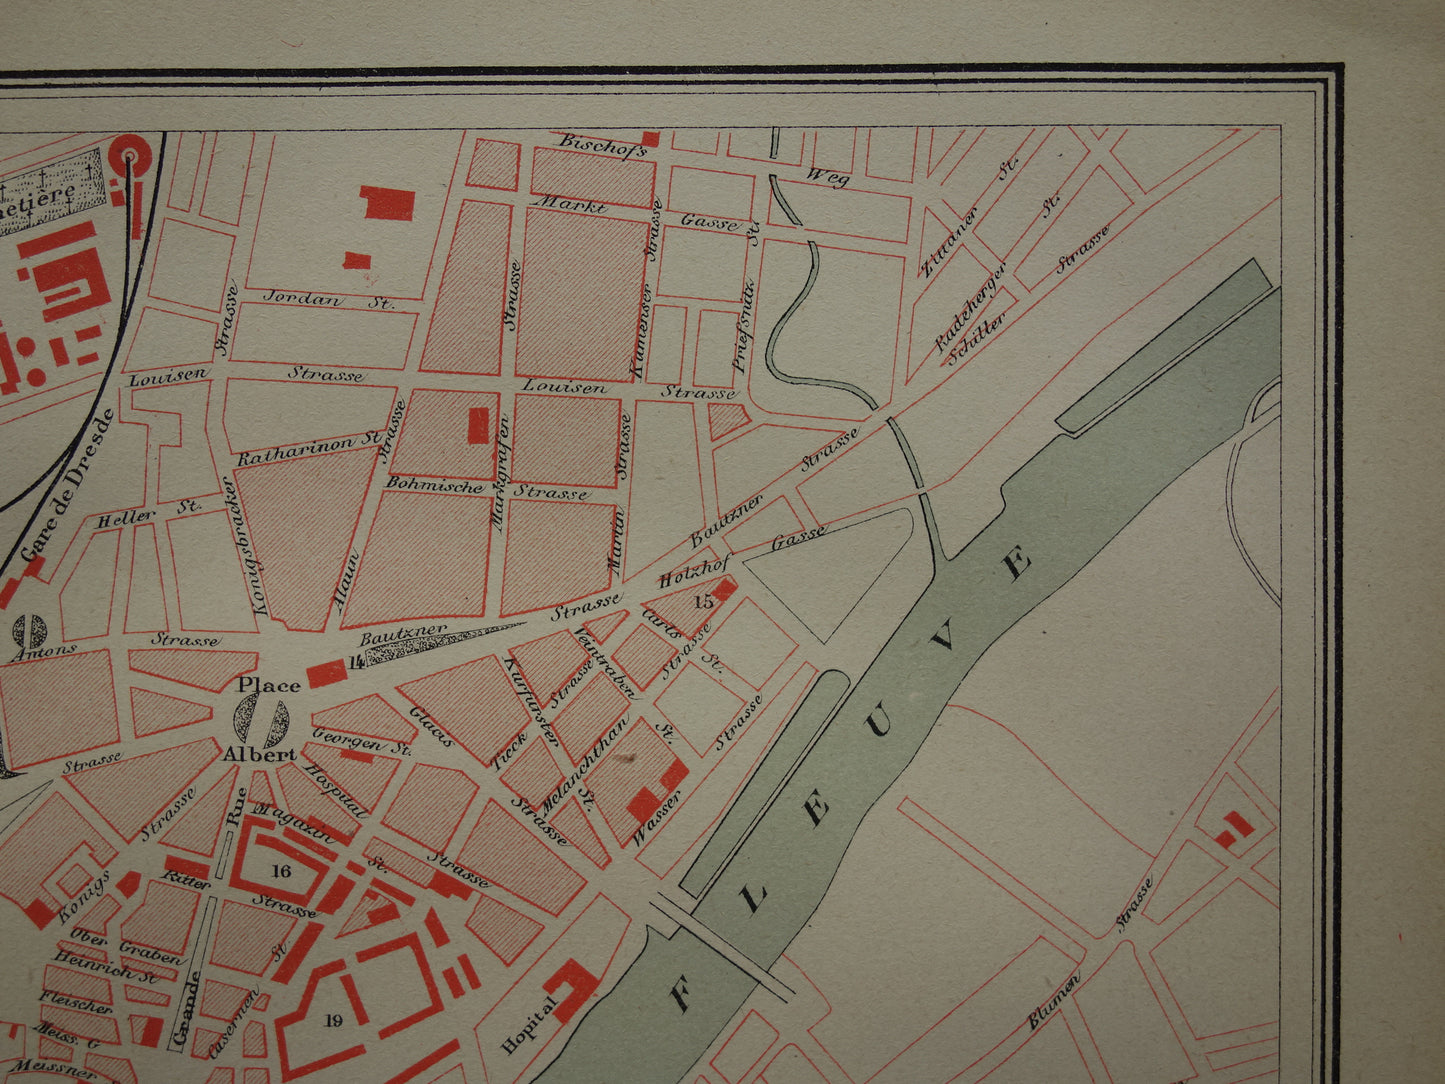 DRESDEN oude kaart van Dresden Duitsland uit 1879 originele antieke Franse plattegrond